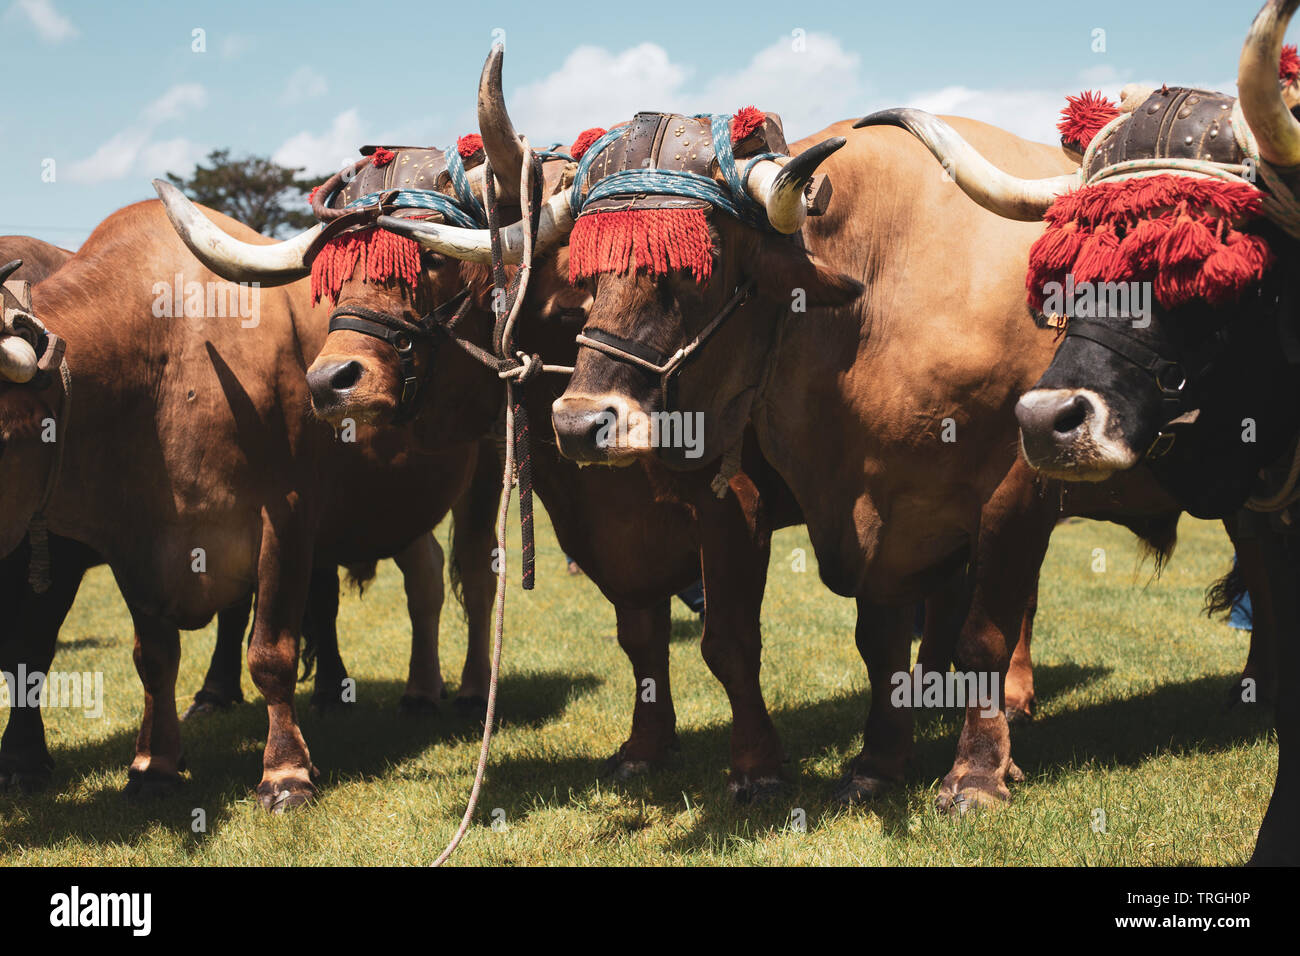 Portrait of oxen Stock Photo